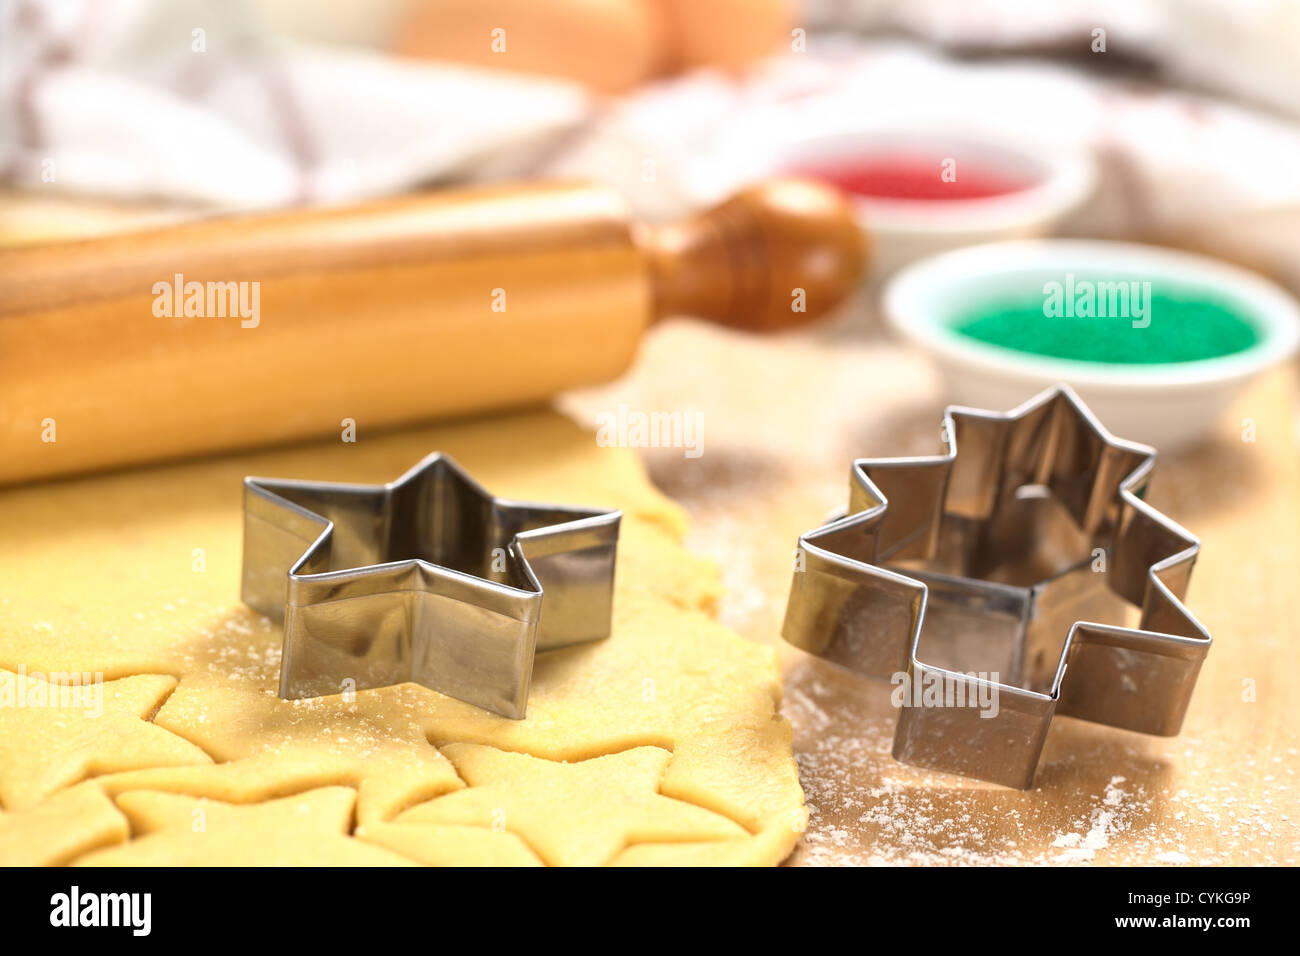 Weihnachtsplätzchen Backen: Ausstecher auf Zucker oder Butter Cookie-Teig mit Nudelholz und bunten Streuseln ausgerollt Stockfoto